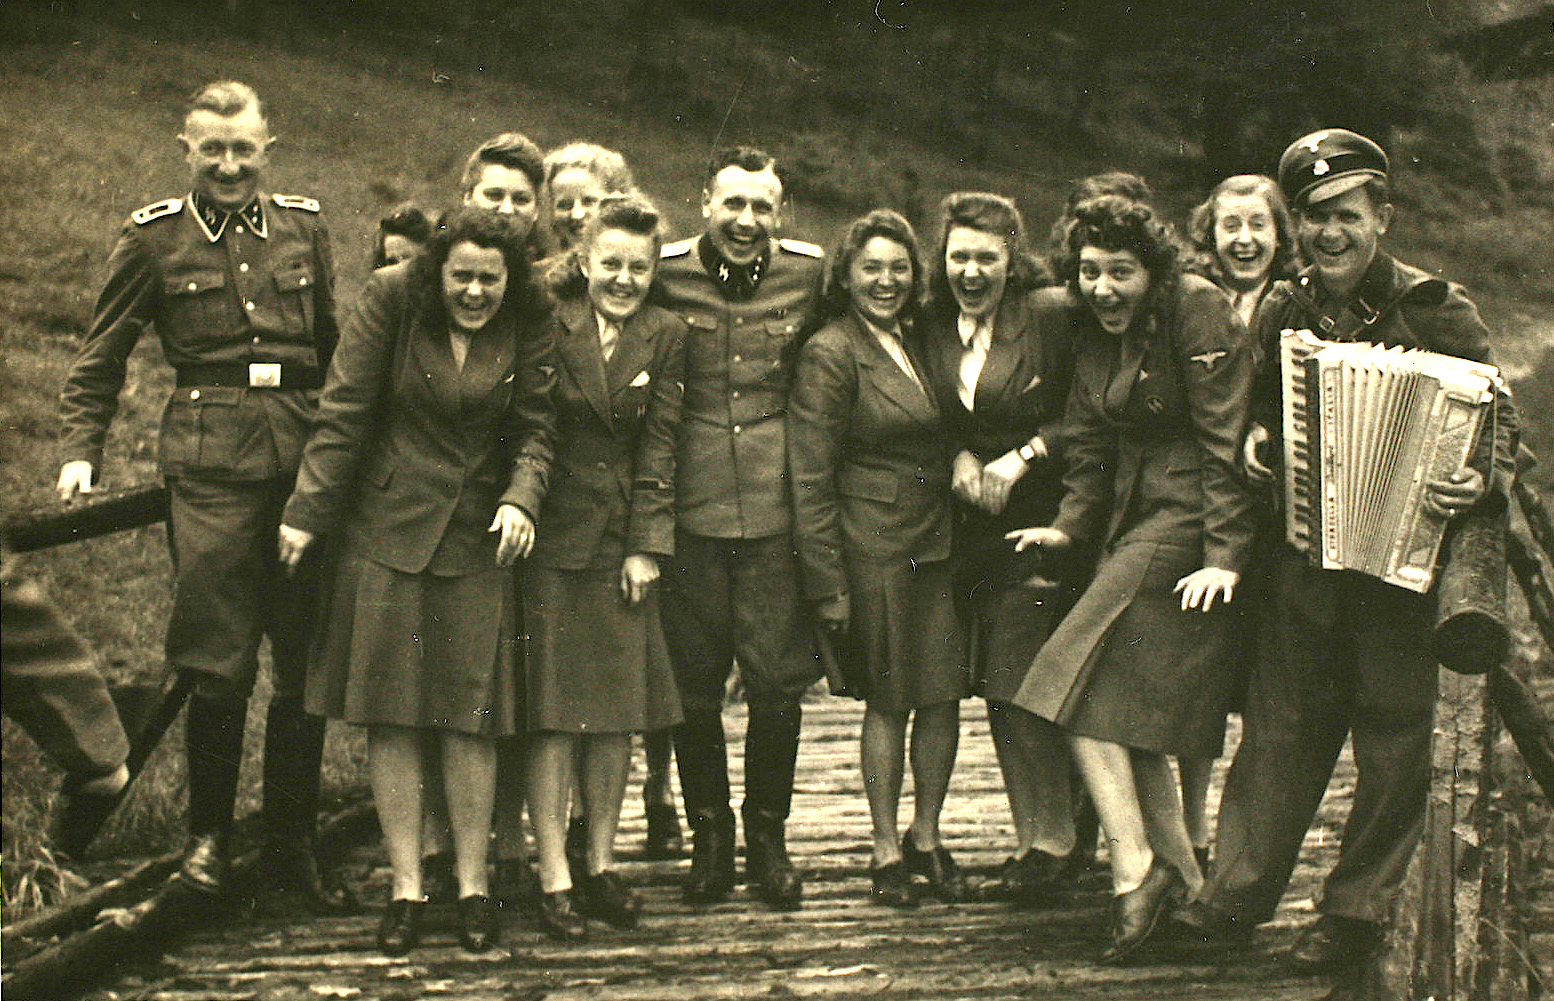 Οι ανέμελες φωτογραφίες των SS από το Άουσβιτς καθώς ποζάρουν χαμογελαστοί. Το άλμπουμ που τεκμηριώνει το έγκλημα